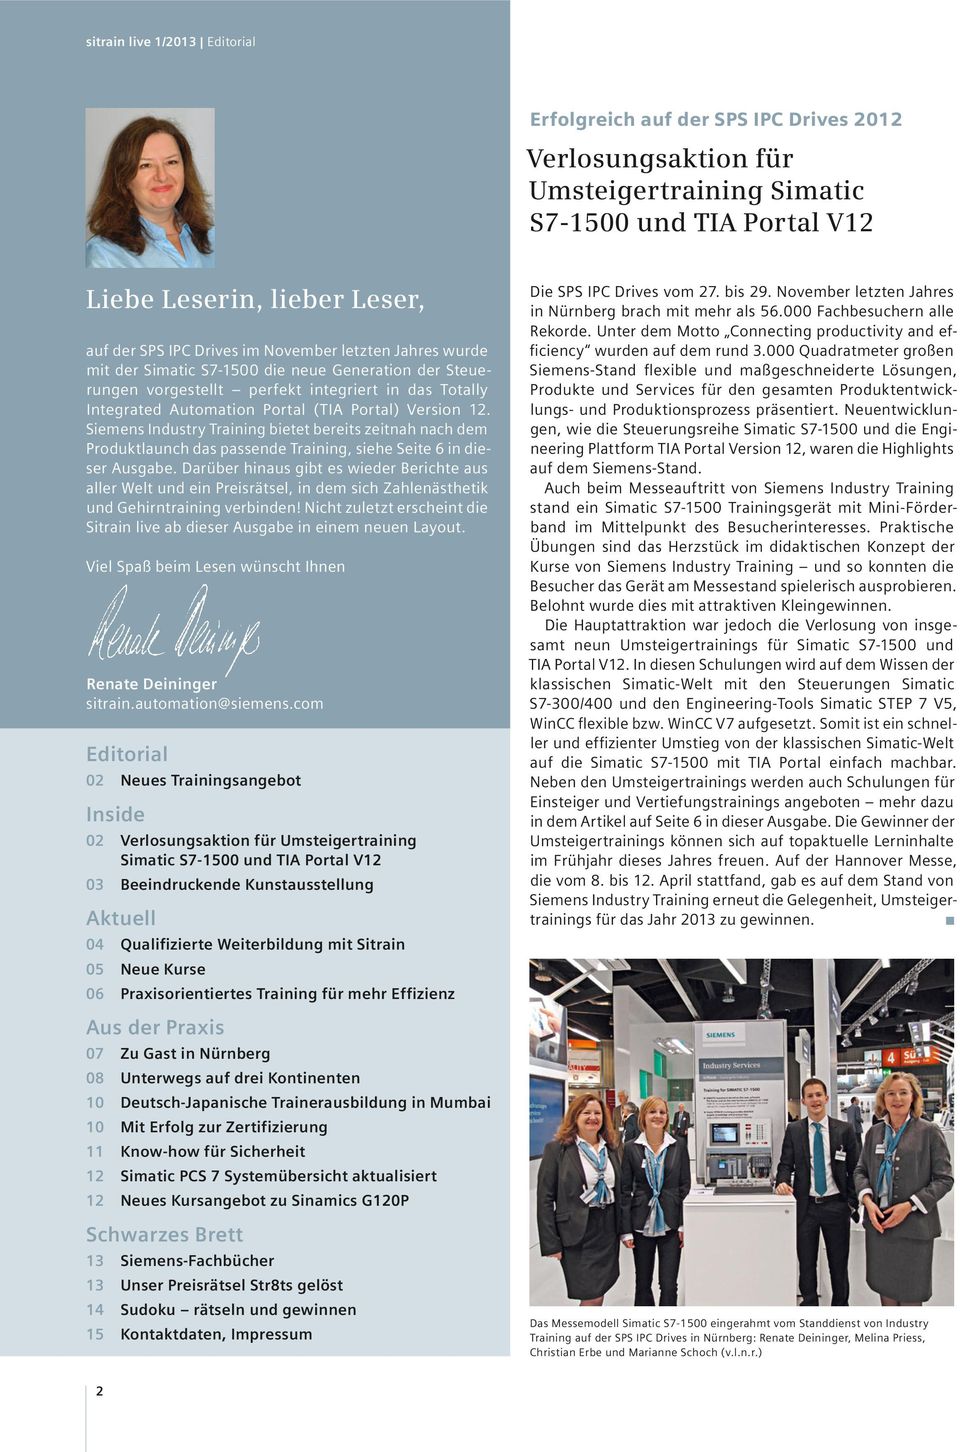 Siemens Industry Training bietet bereits zeitnah nach dem Produktlaunch das passende Training, siehe Seite 6 in dieser Ausgabe.